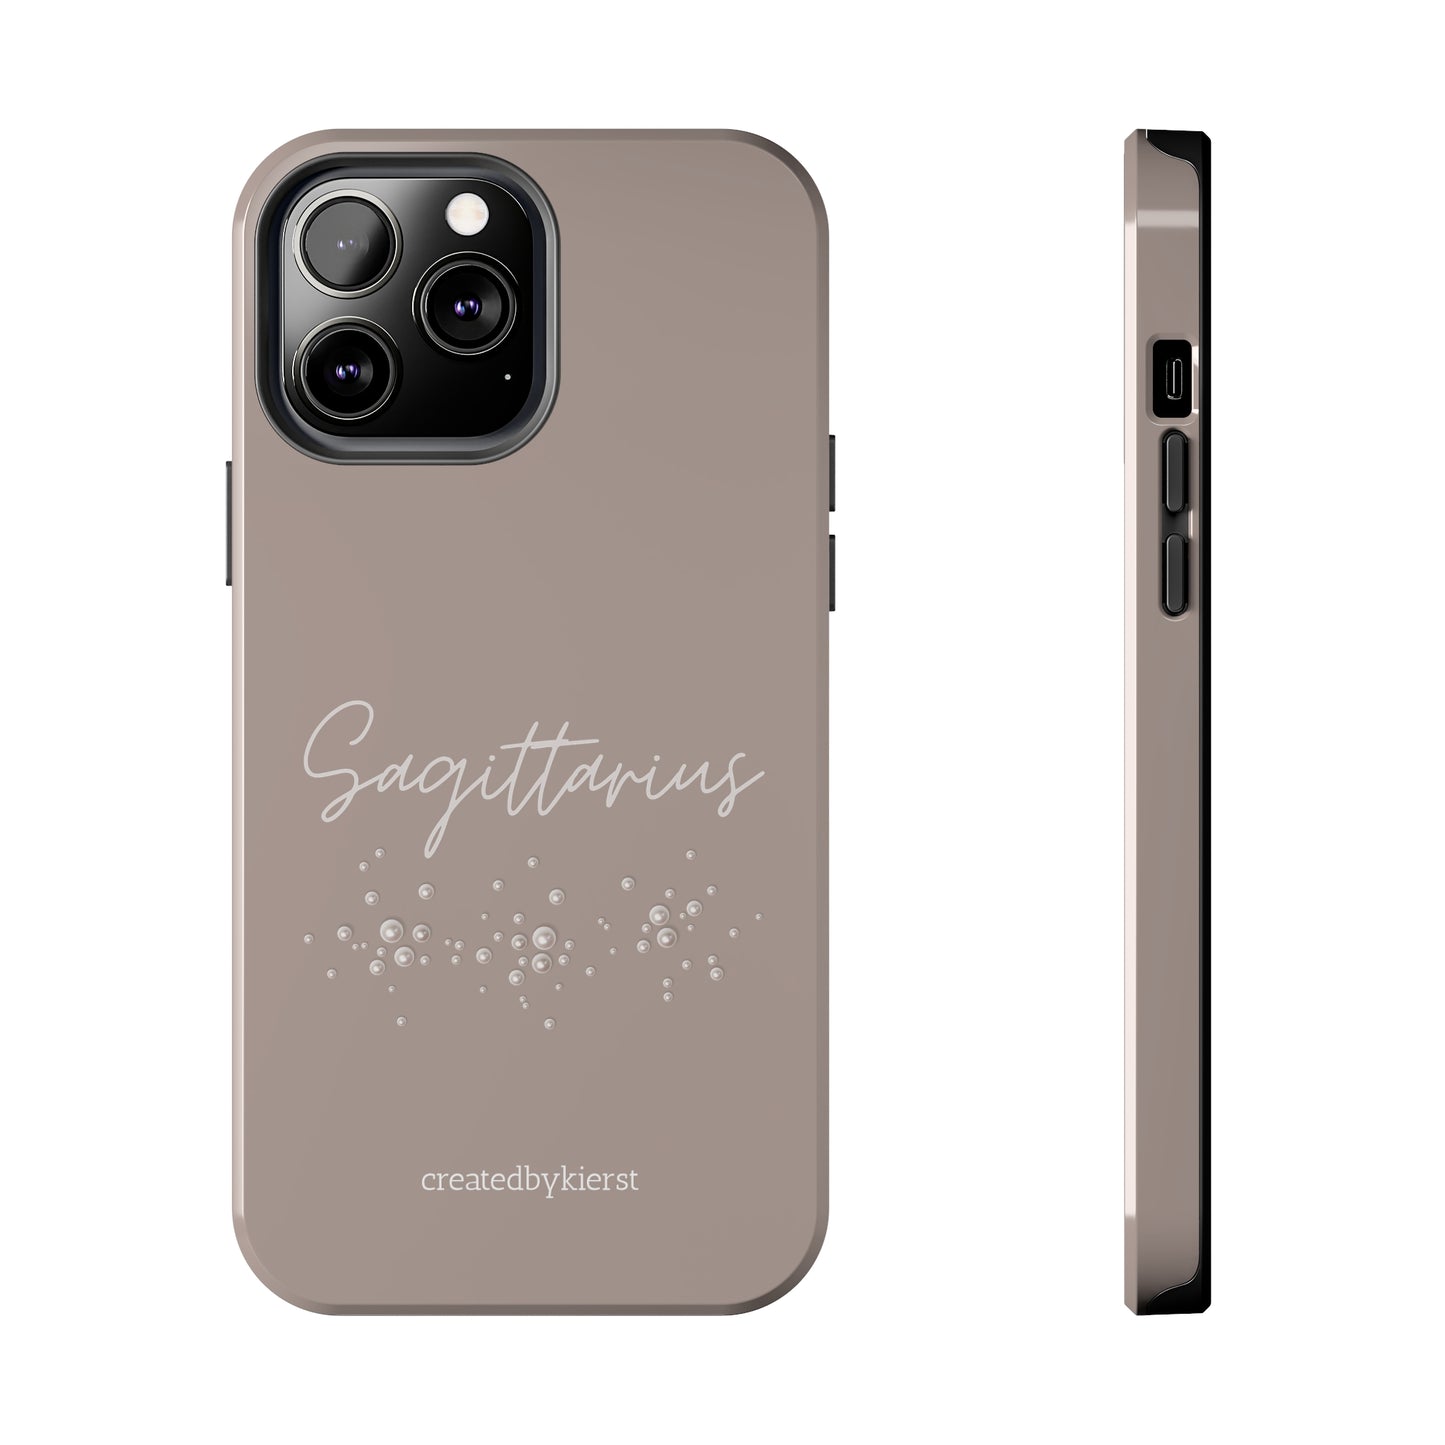 Sagittarius and Pearls iPhone Case